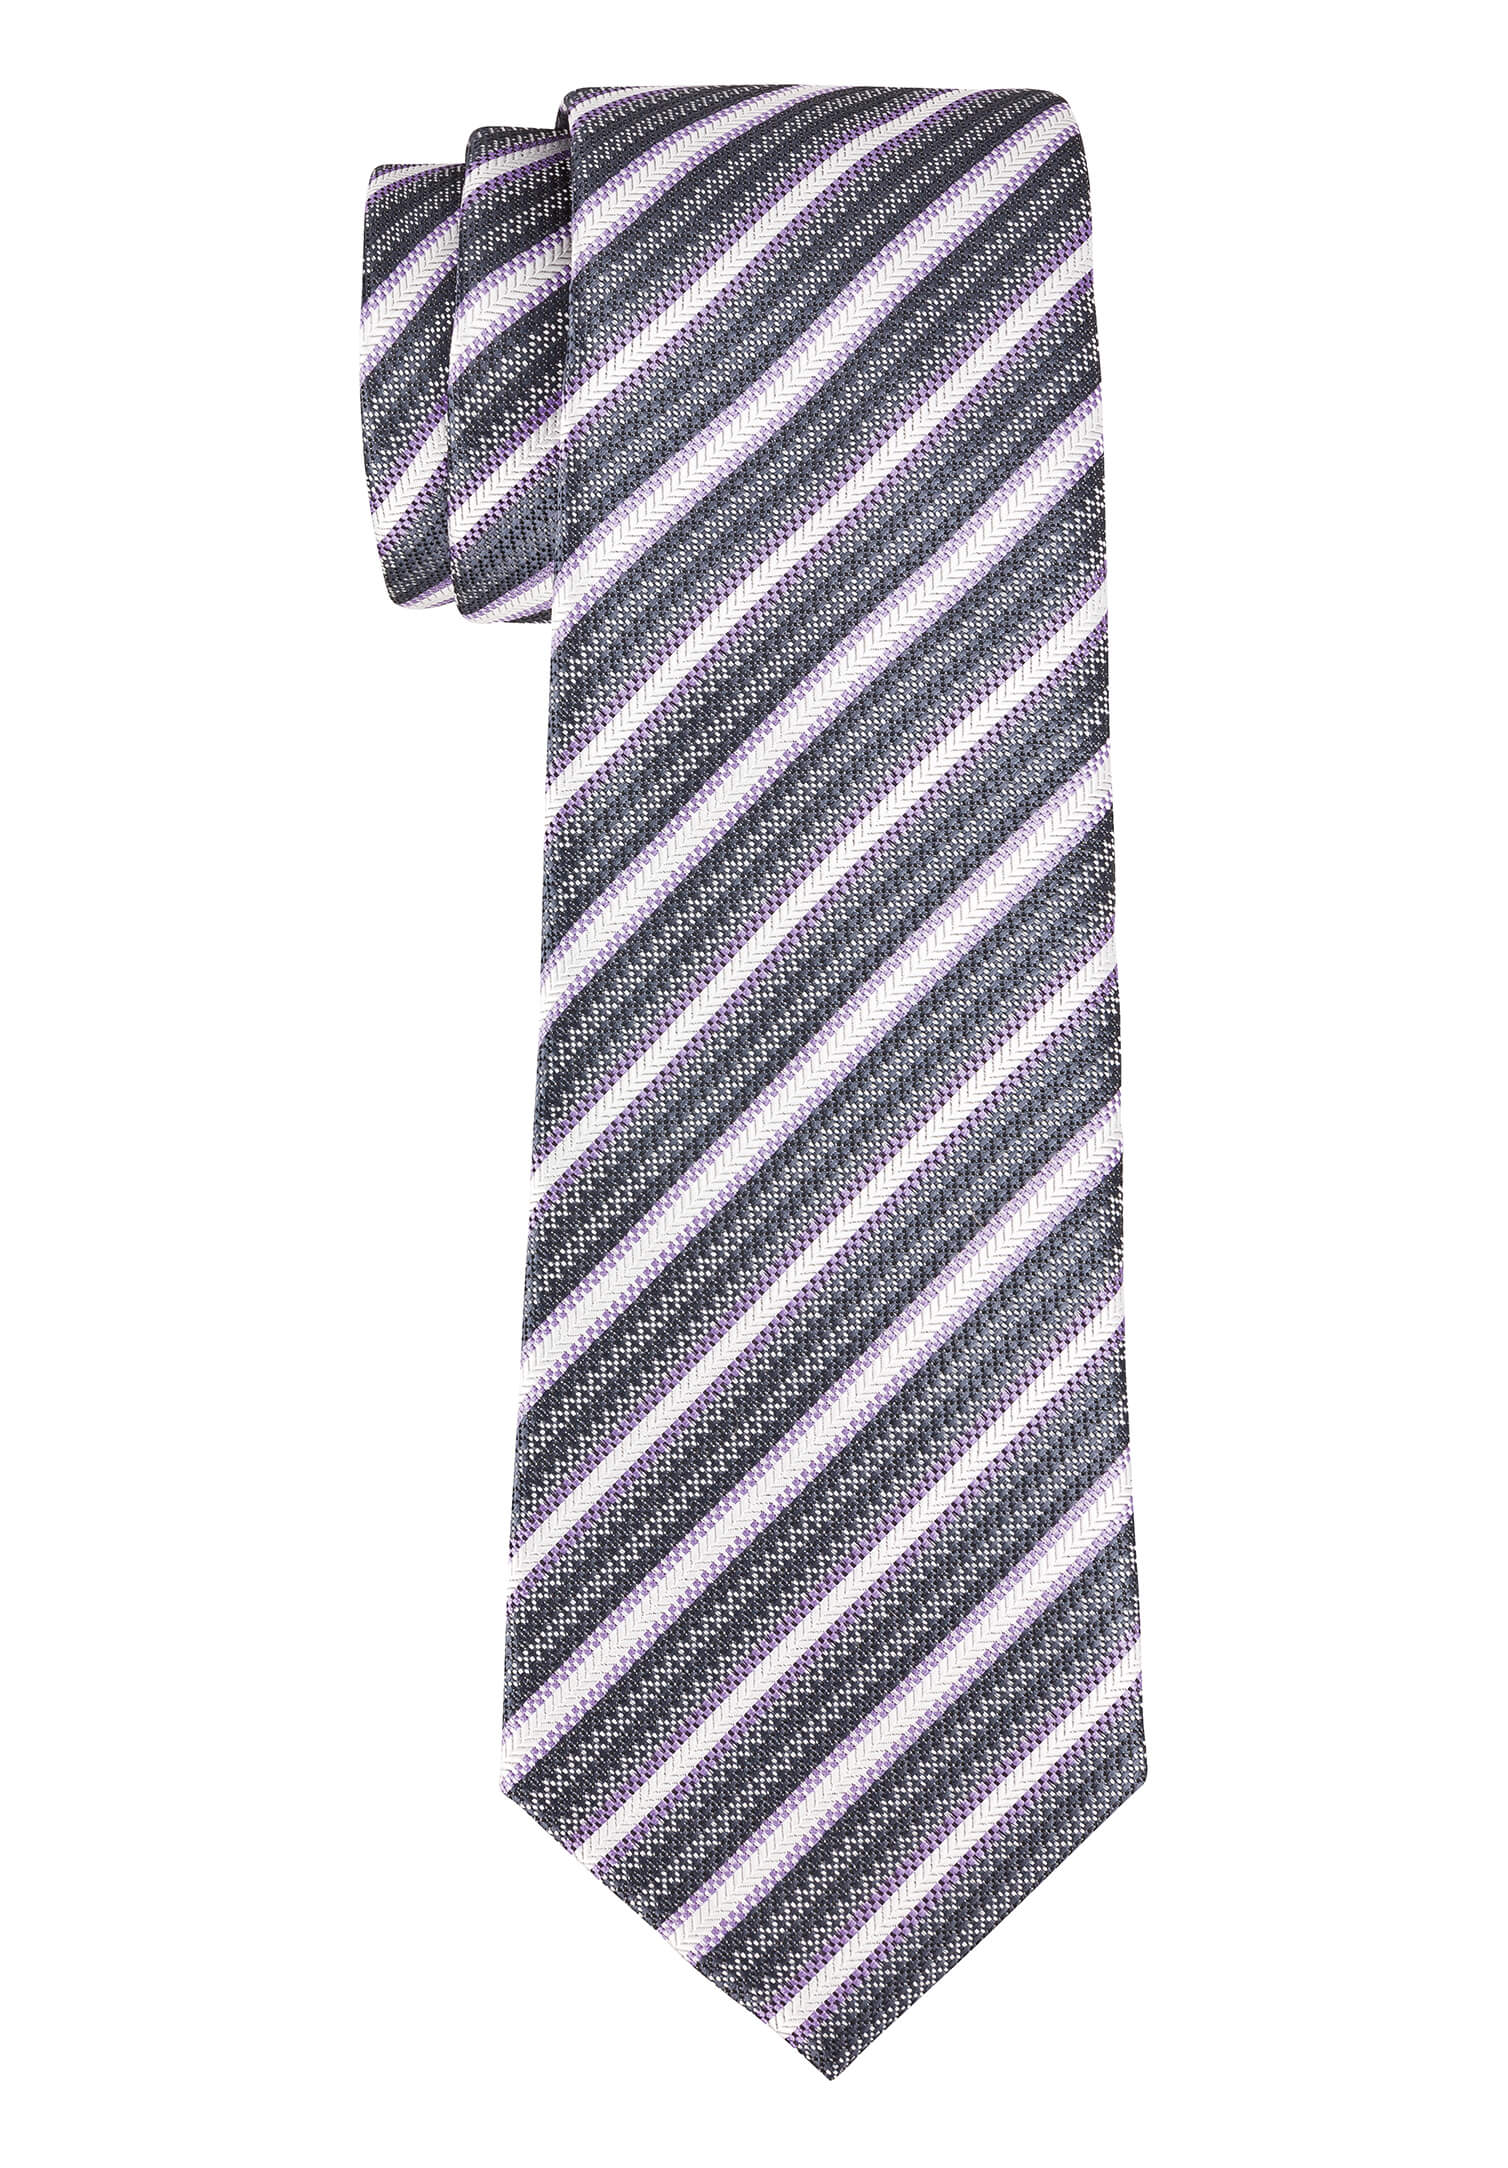 Krawatte modische Streifen flieder/grau/anthrazit